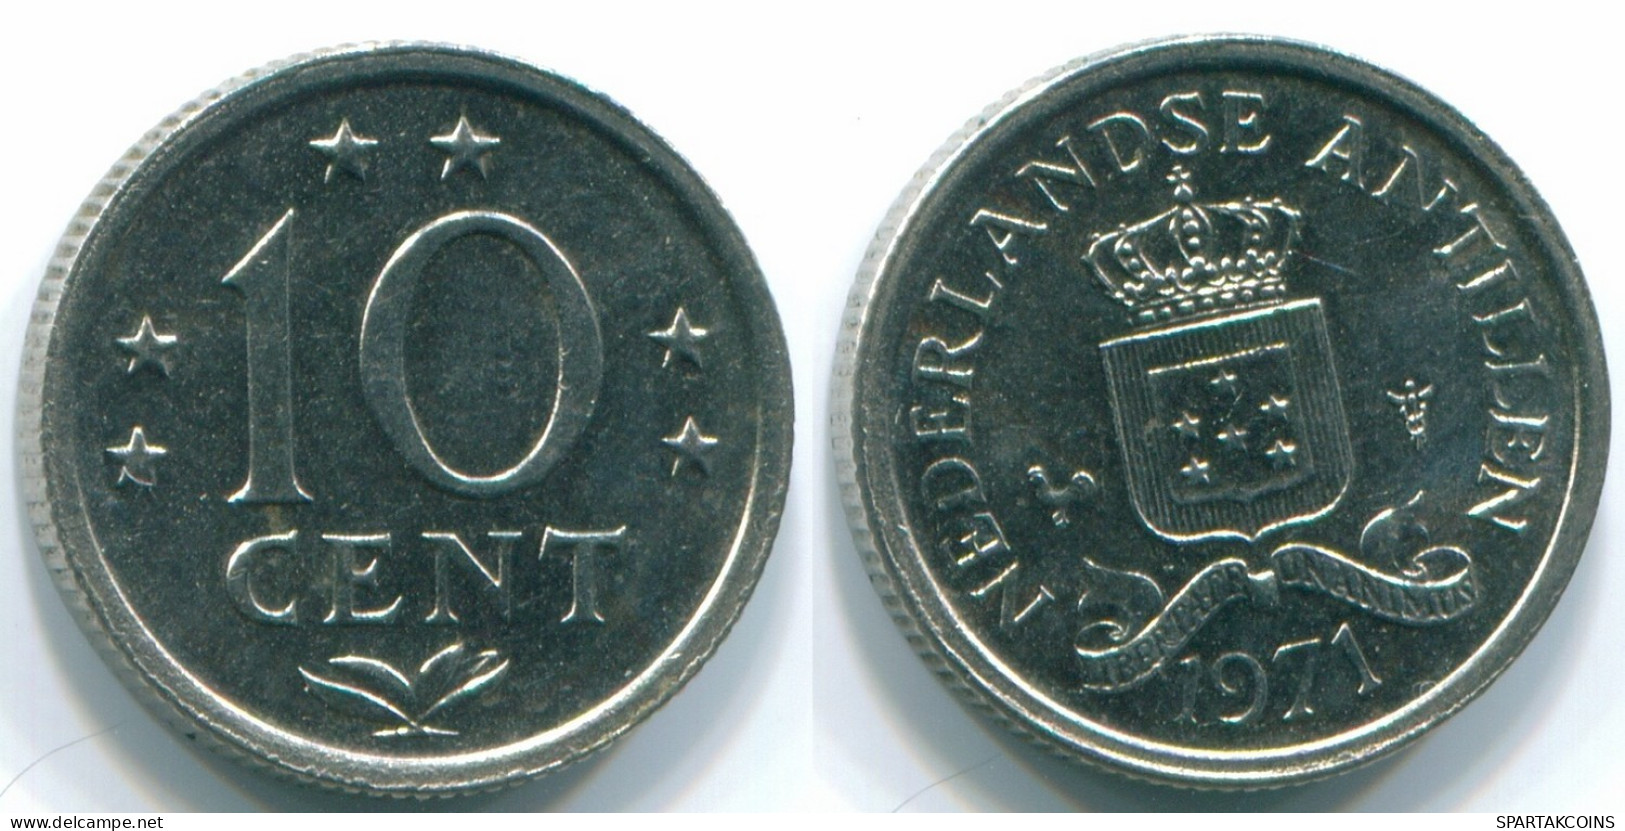 10 CENTS 1971 NETHERLANDS ANTILLES Nickel Colonial Coin #S13444.U.A - Niederländische Antillen